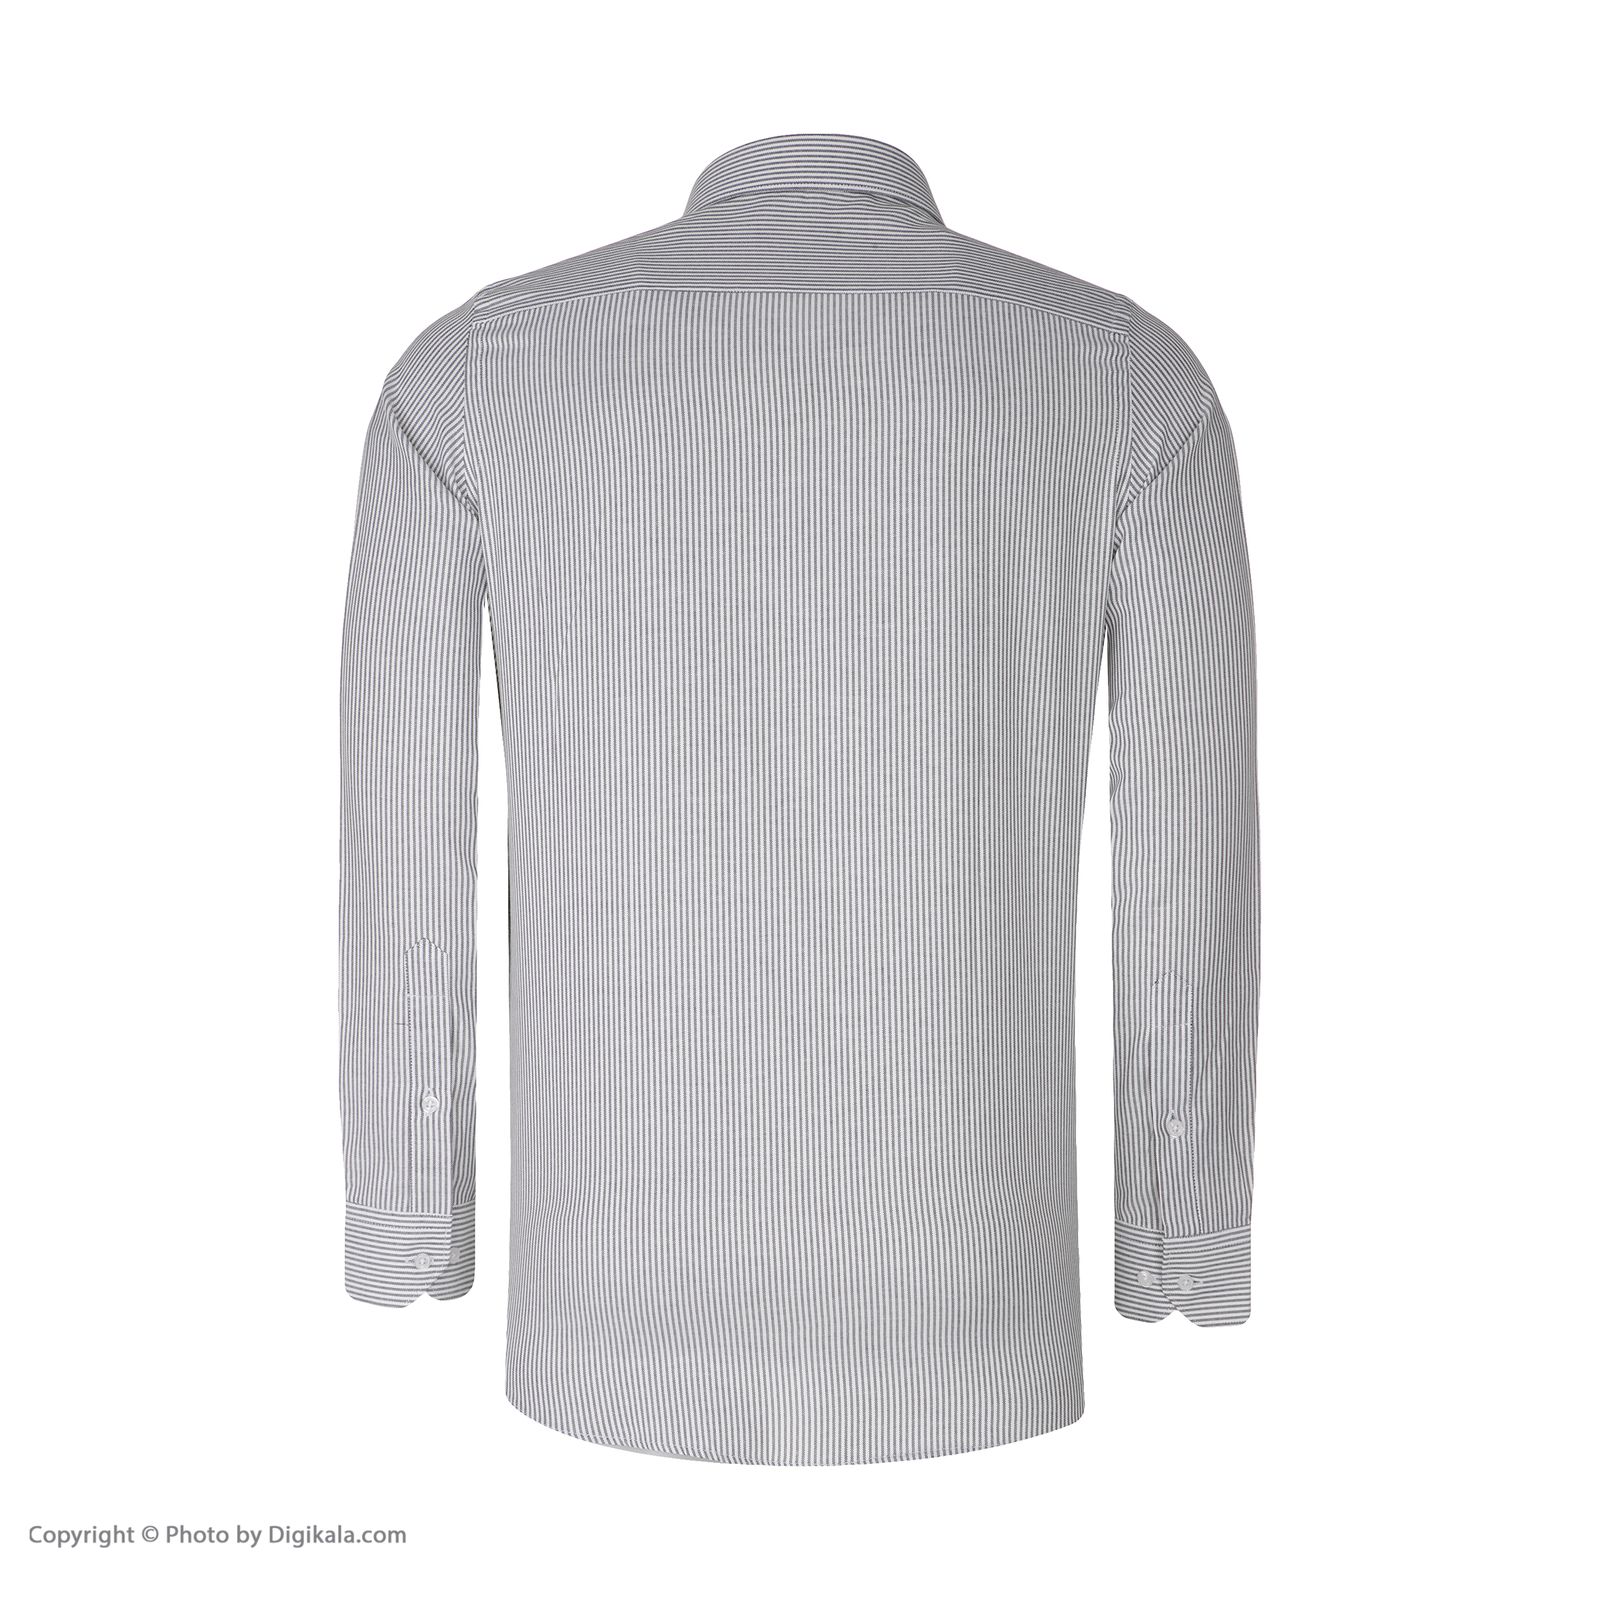 پیراهن مردانه اکزاترس مدل I012002002360003-002 -  - 4